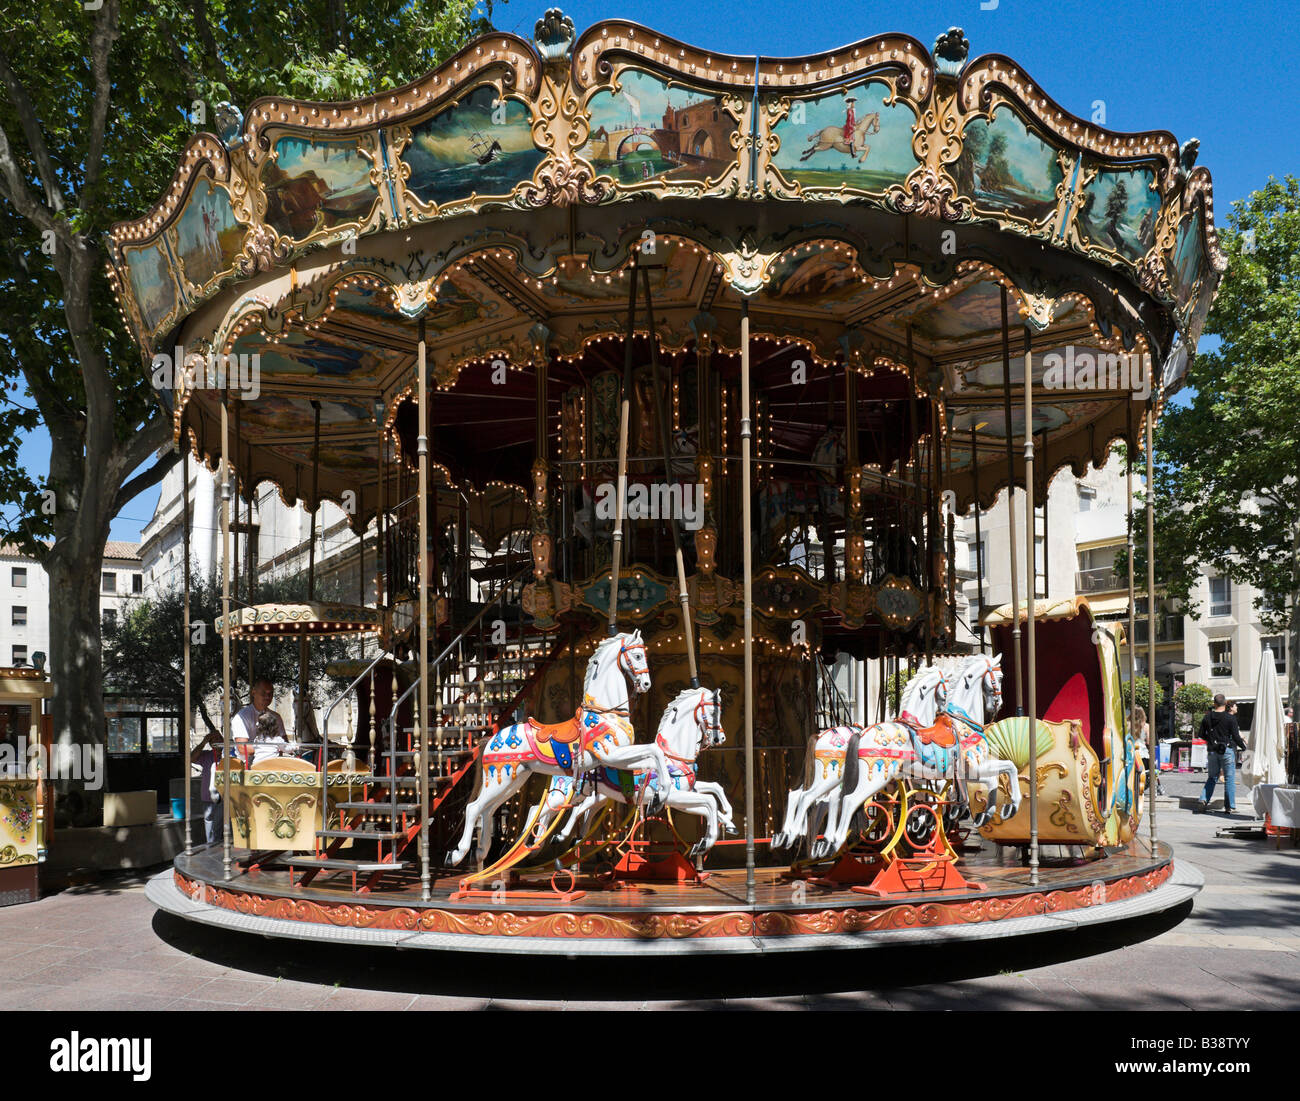 Carrousel en face de l'Hôtel de Ville, place d'Avignon, Avignon, Provence, France Banque D'Images